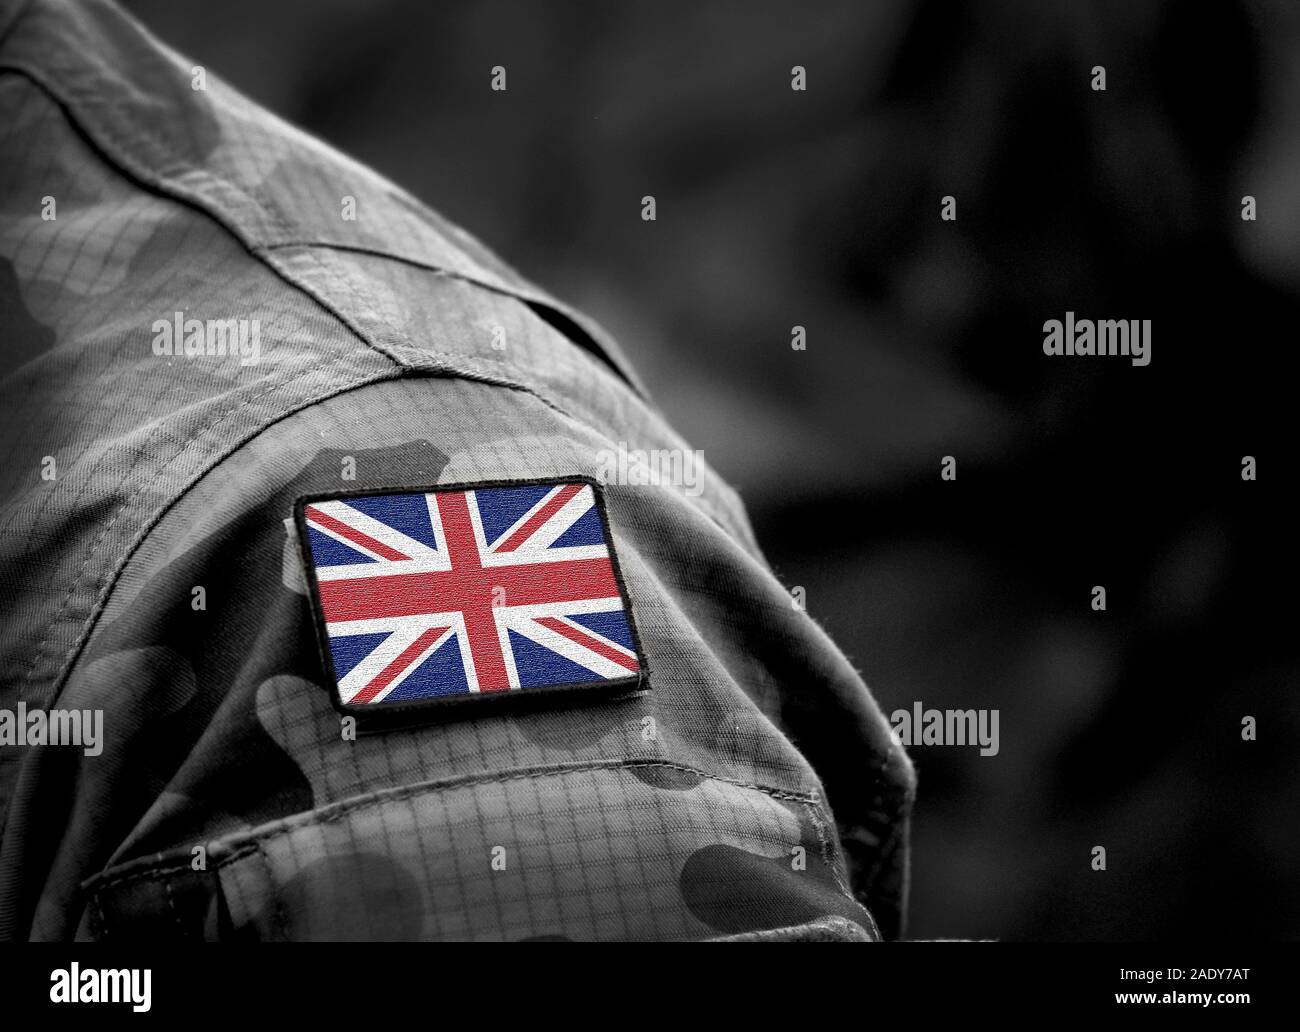 Flagge des Vereinigten Königreichs auf der Uniform. Britischen Armee. Britische Streitkräfte, Soldaten. Collage. Stockfoto